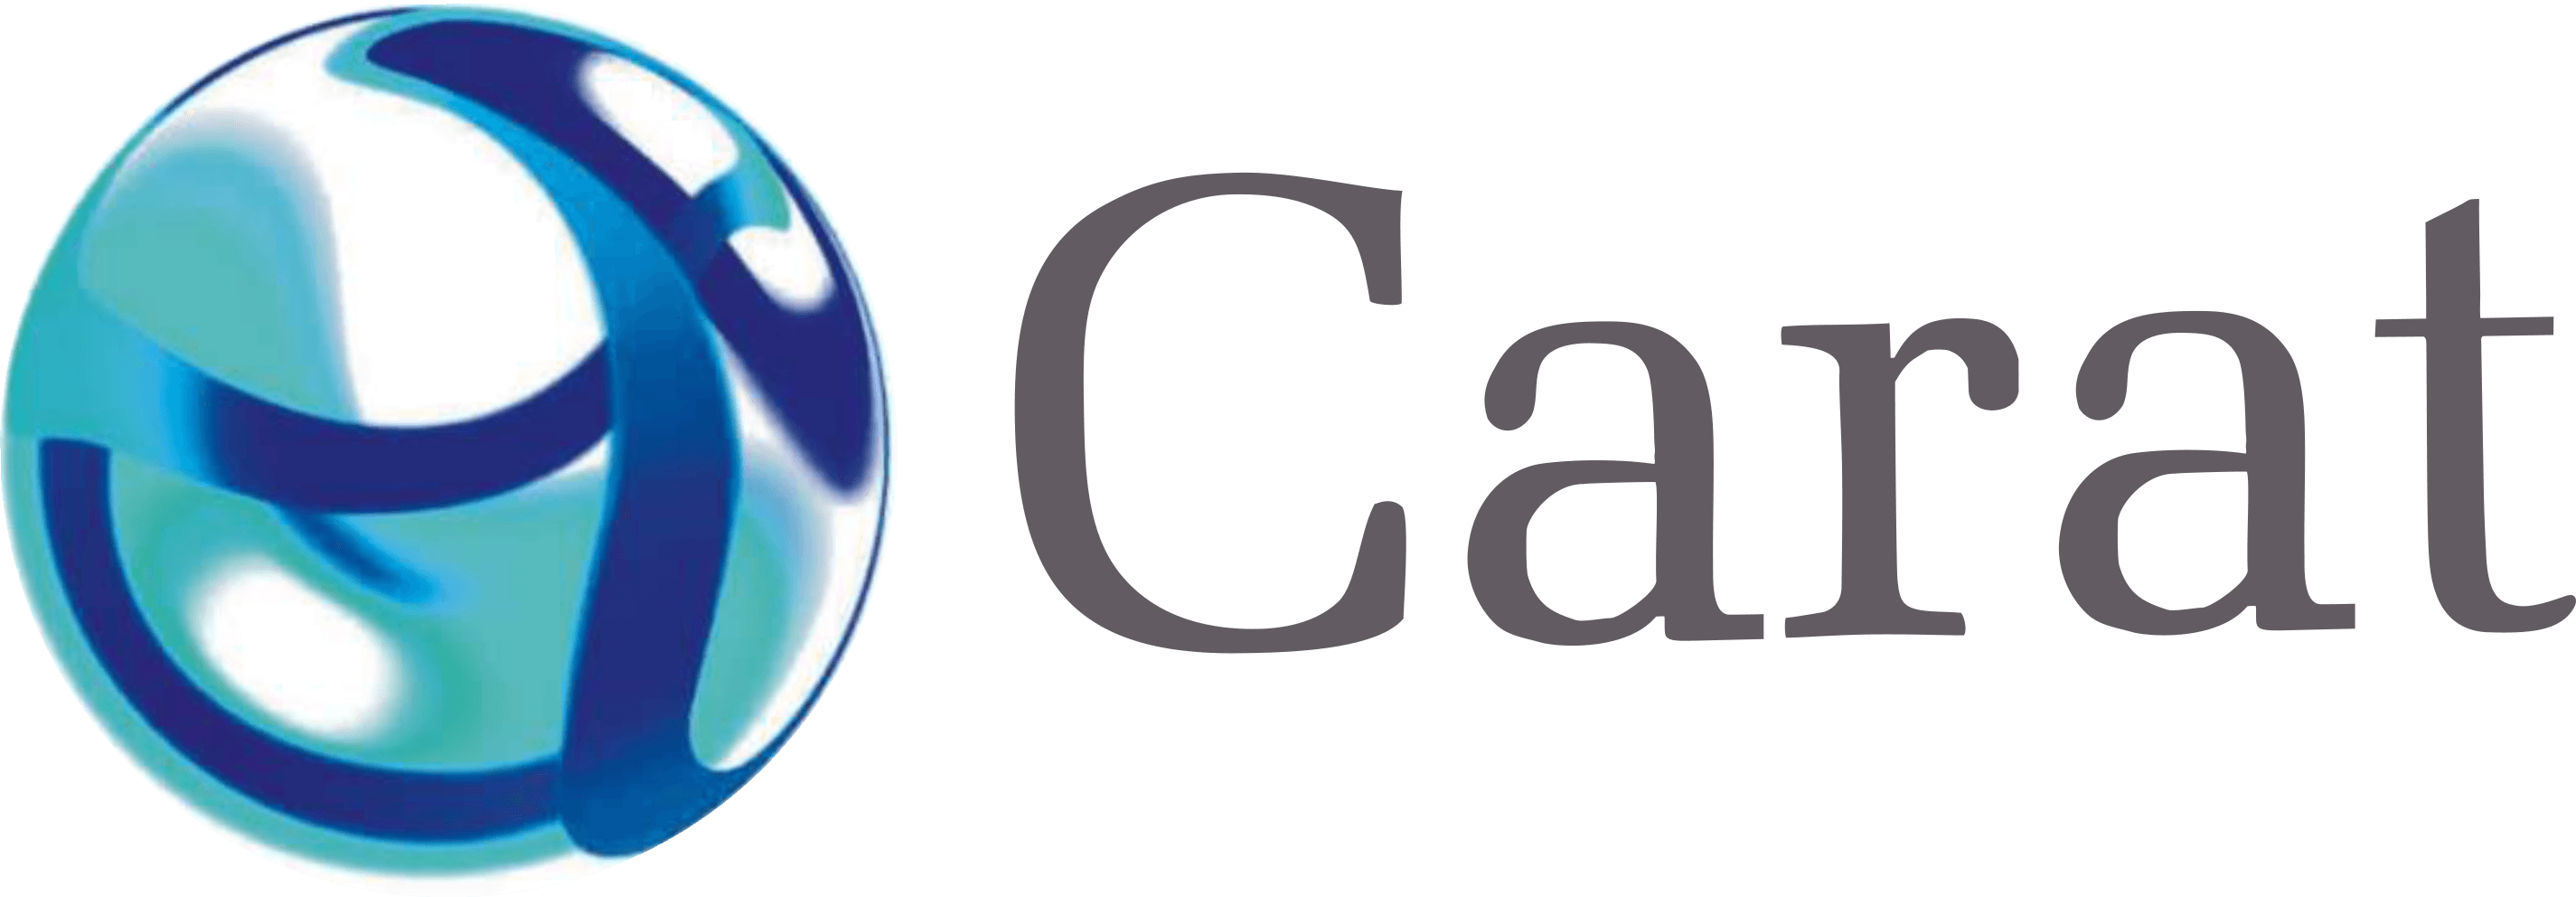 Carat Logo - Carat. Dentsu Aegis Network India